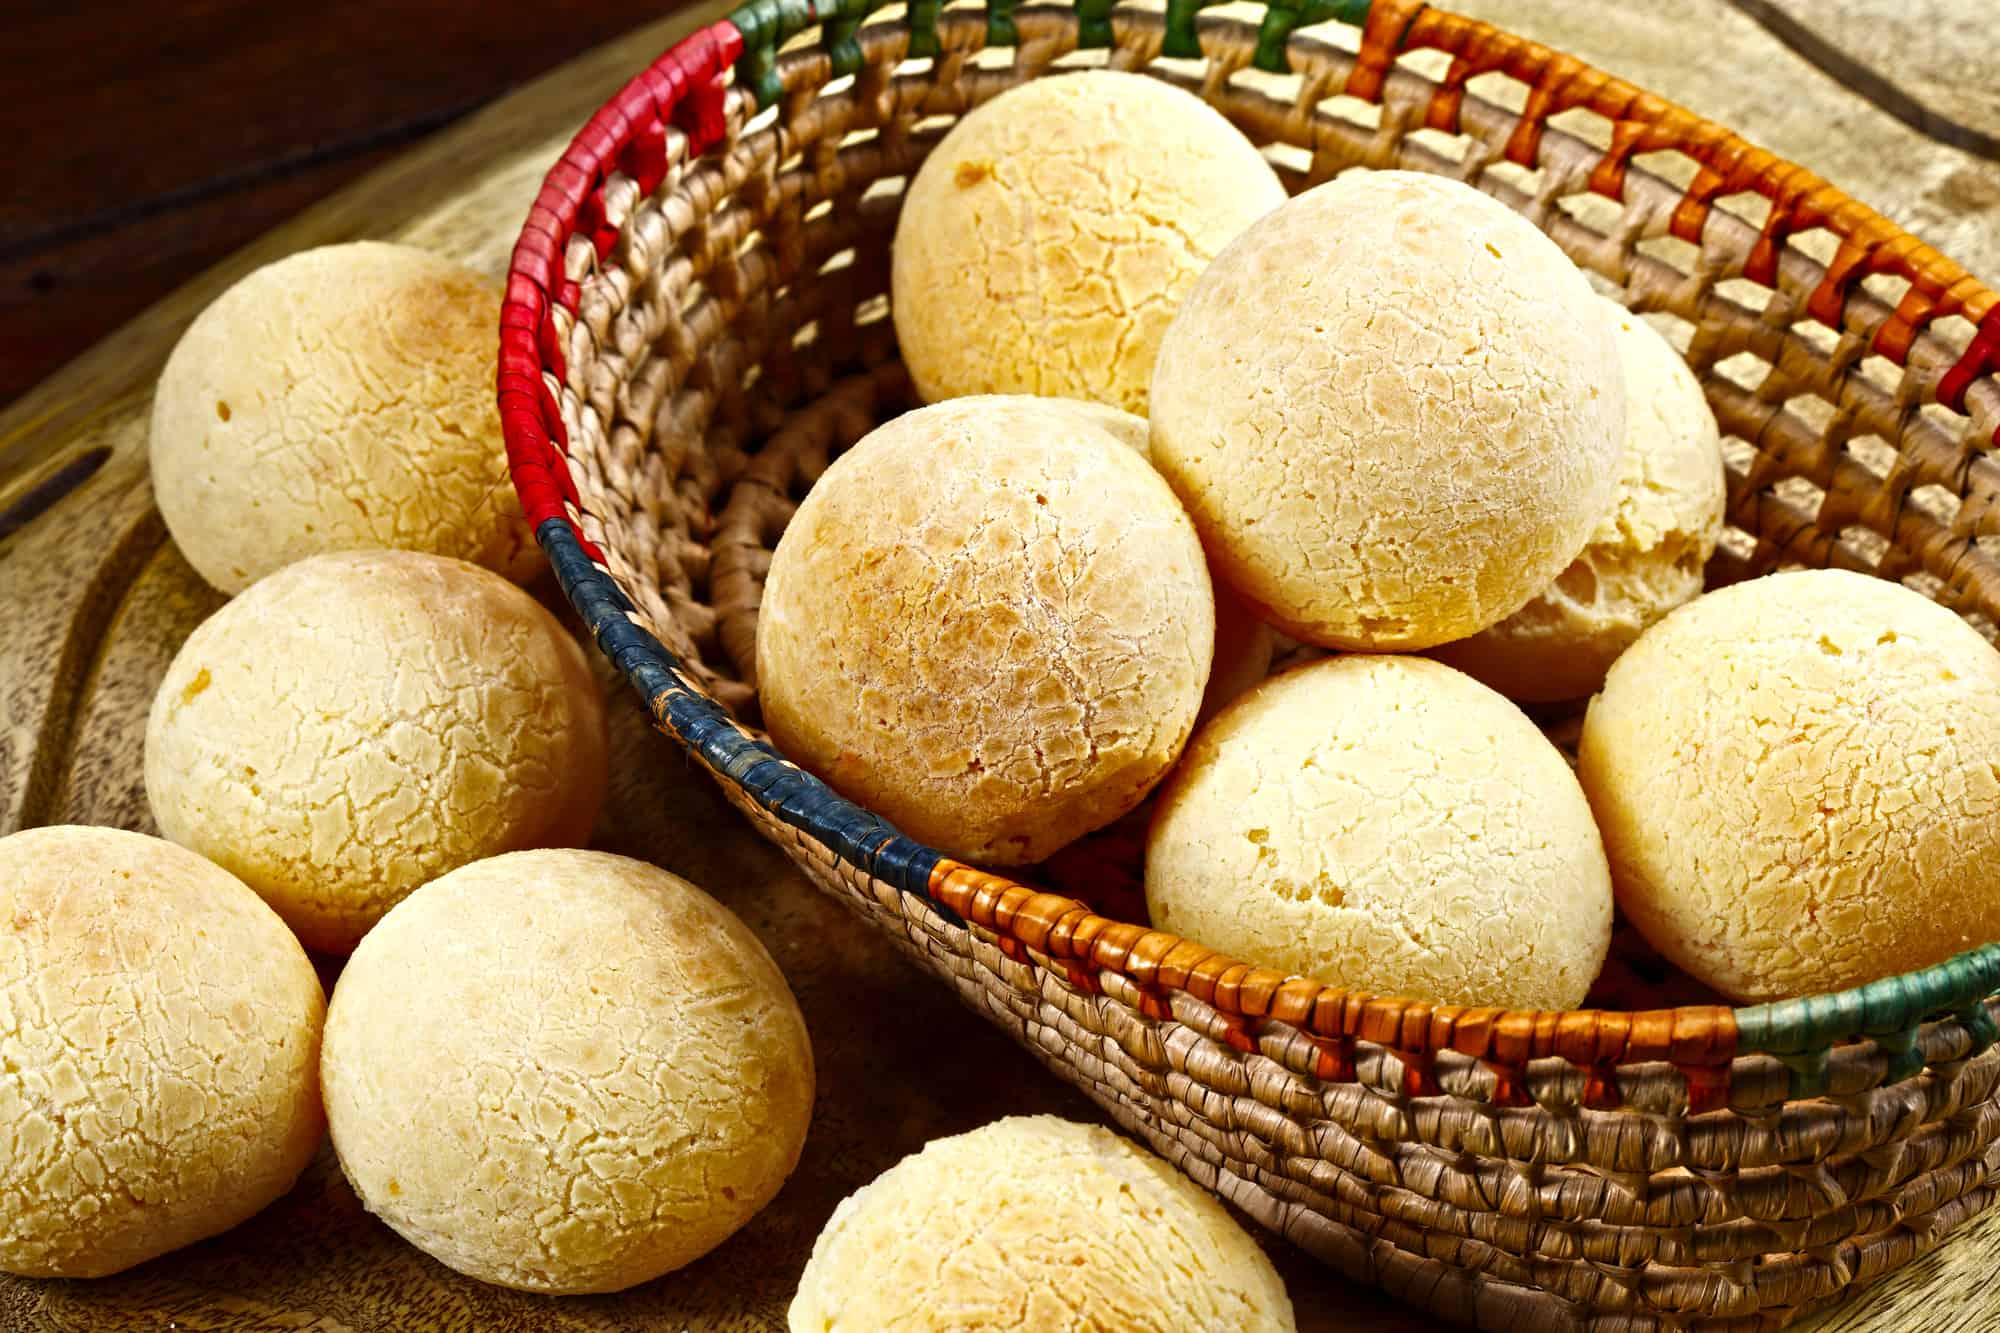 Brazilian cheese bread in a wicker basket